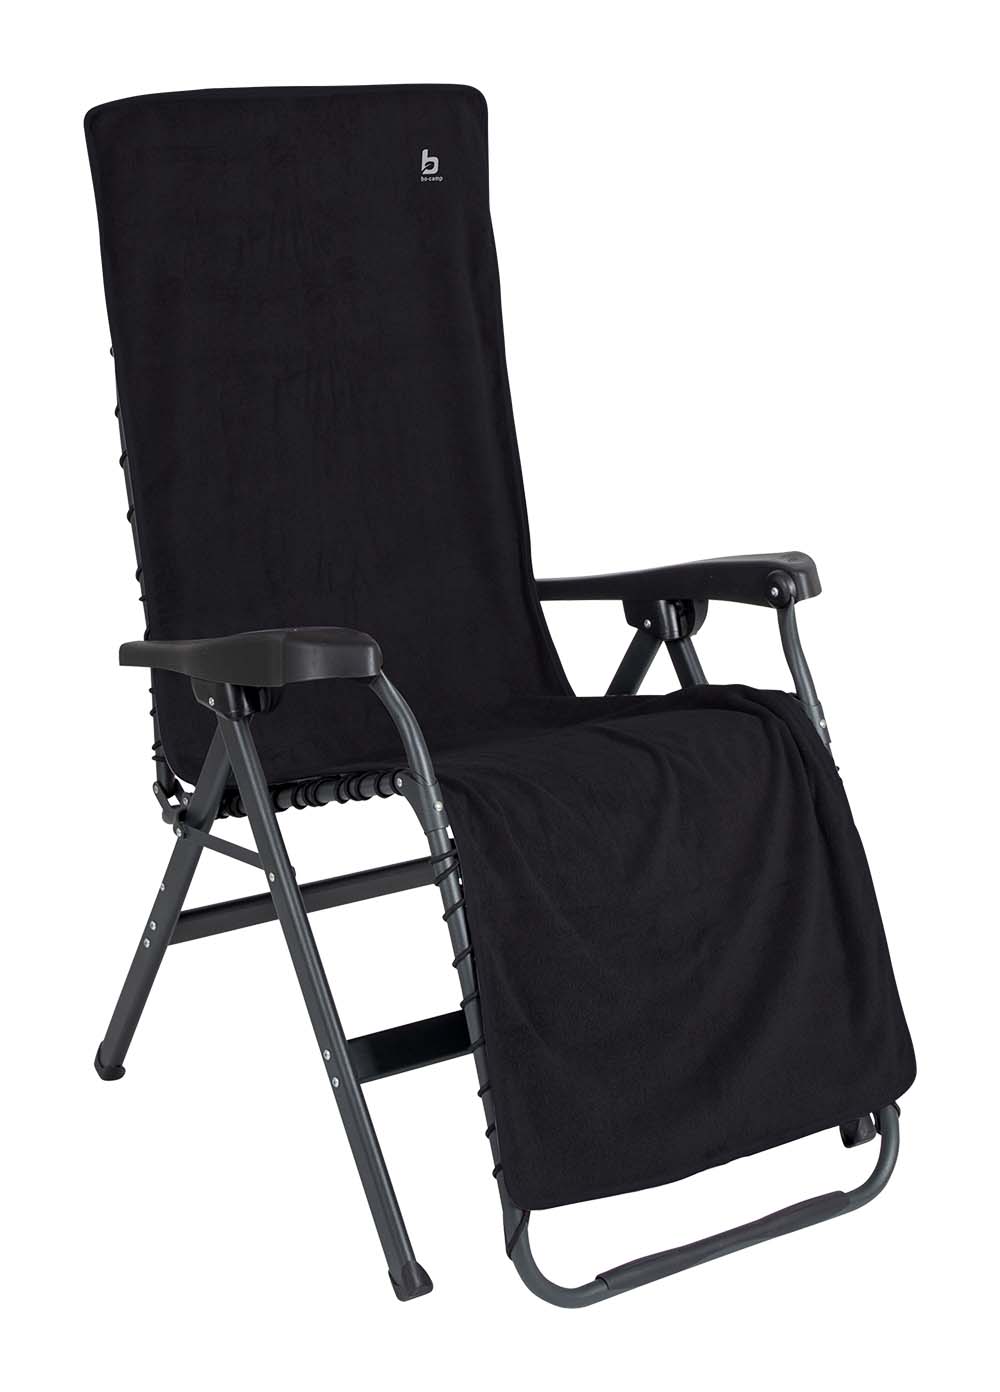 1849288 Een universele stoelhoes voor relaxstoelen. Zorgt voor optimaal zitcomfort en biedt bescherming aan de stoel. De stoelhoes is universeel toepasbaar.